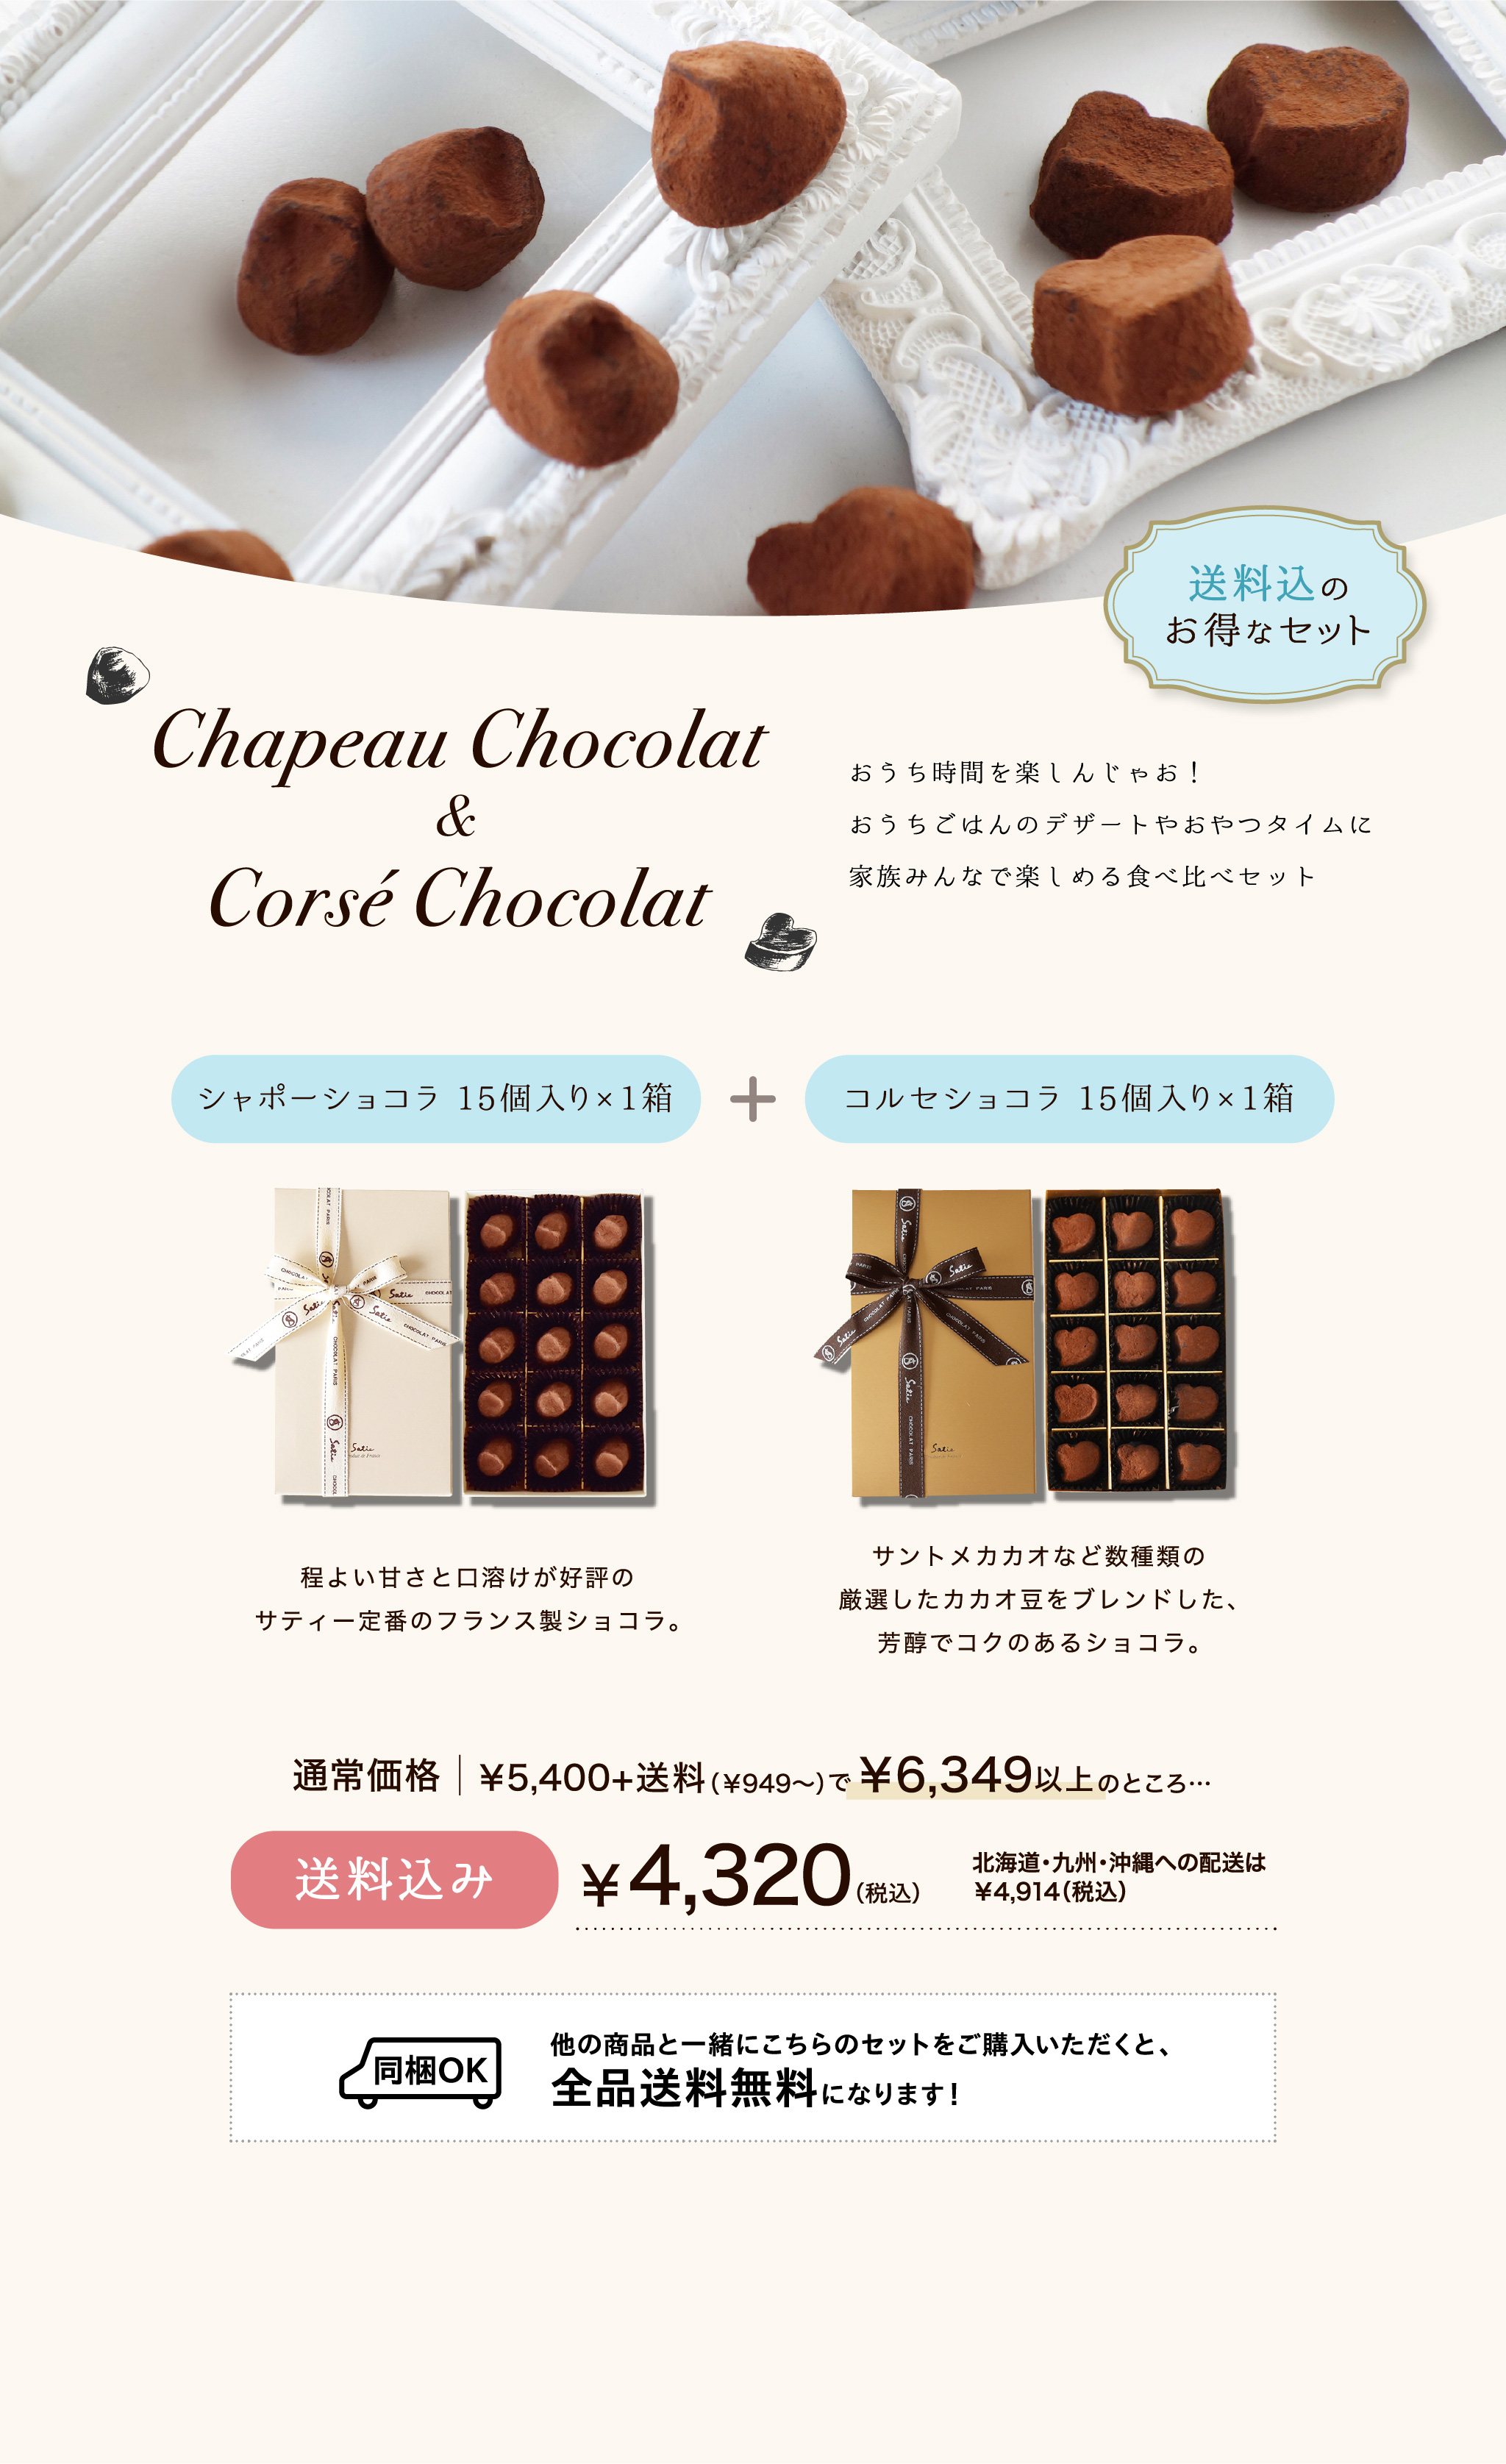 Chapeau Chocolat & Corsé Chocolat / おうち時間を楽しんじゃお！おうちごはんのデザートやおやつタイムに家族みんなで楽しめる食べ比べセット…シャポーショコラ×10個・コルセショコラ×10個・送料込み